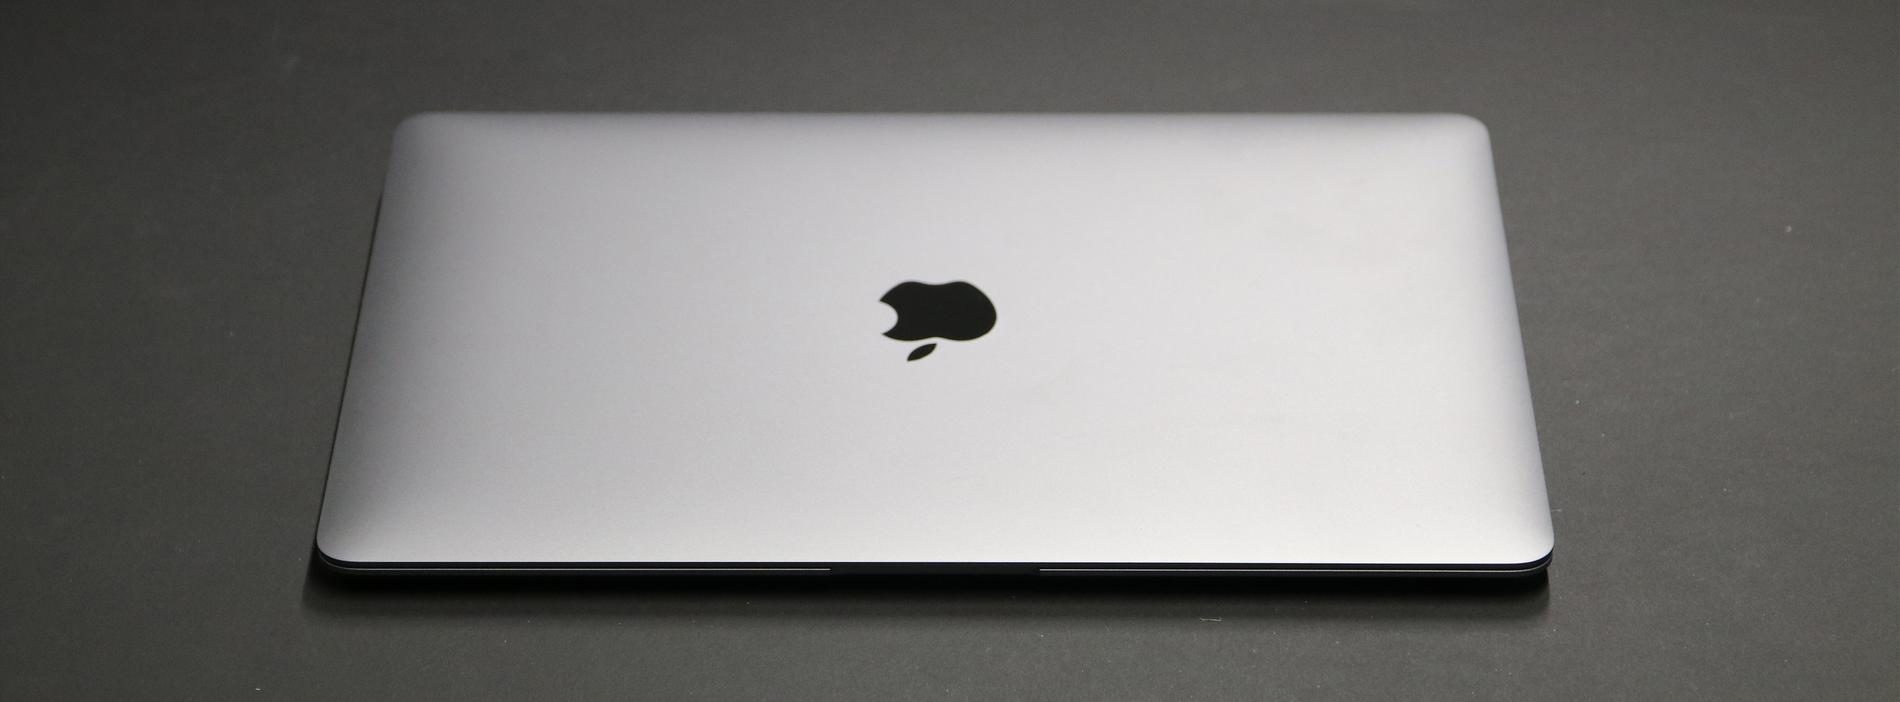 Nya Macbook Air kommer i färgerna rymdgrå, guld och silver.